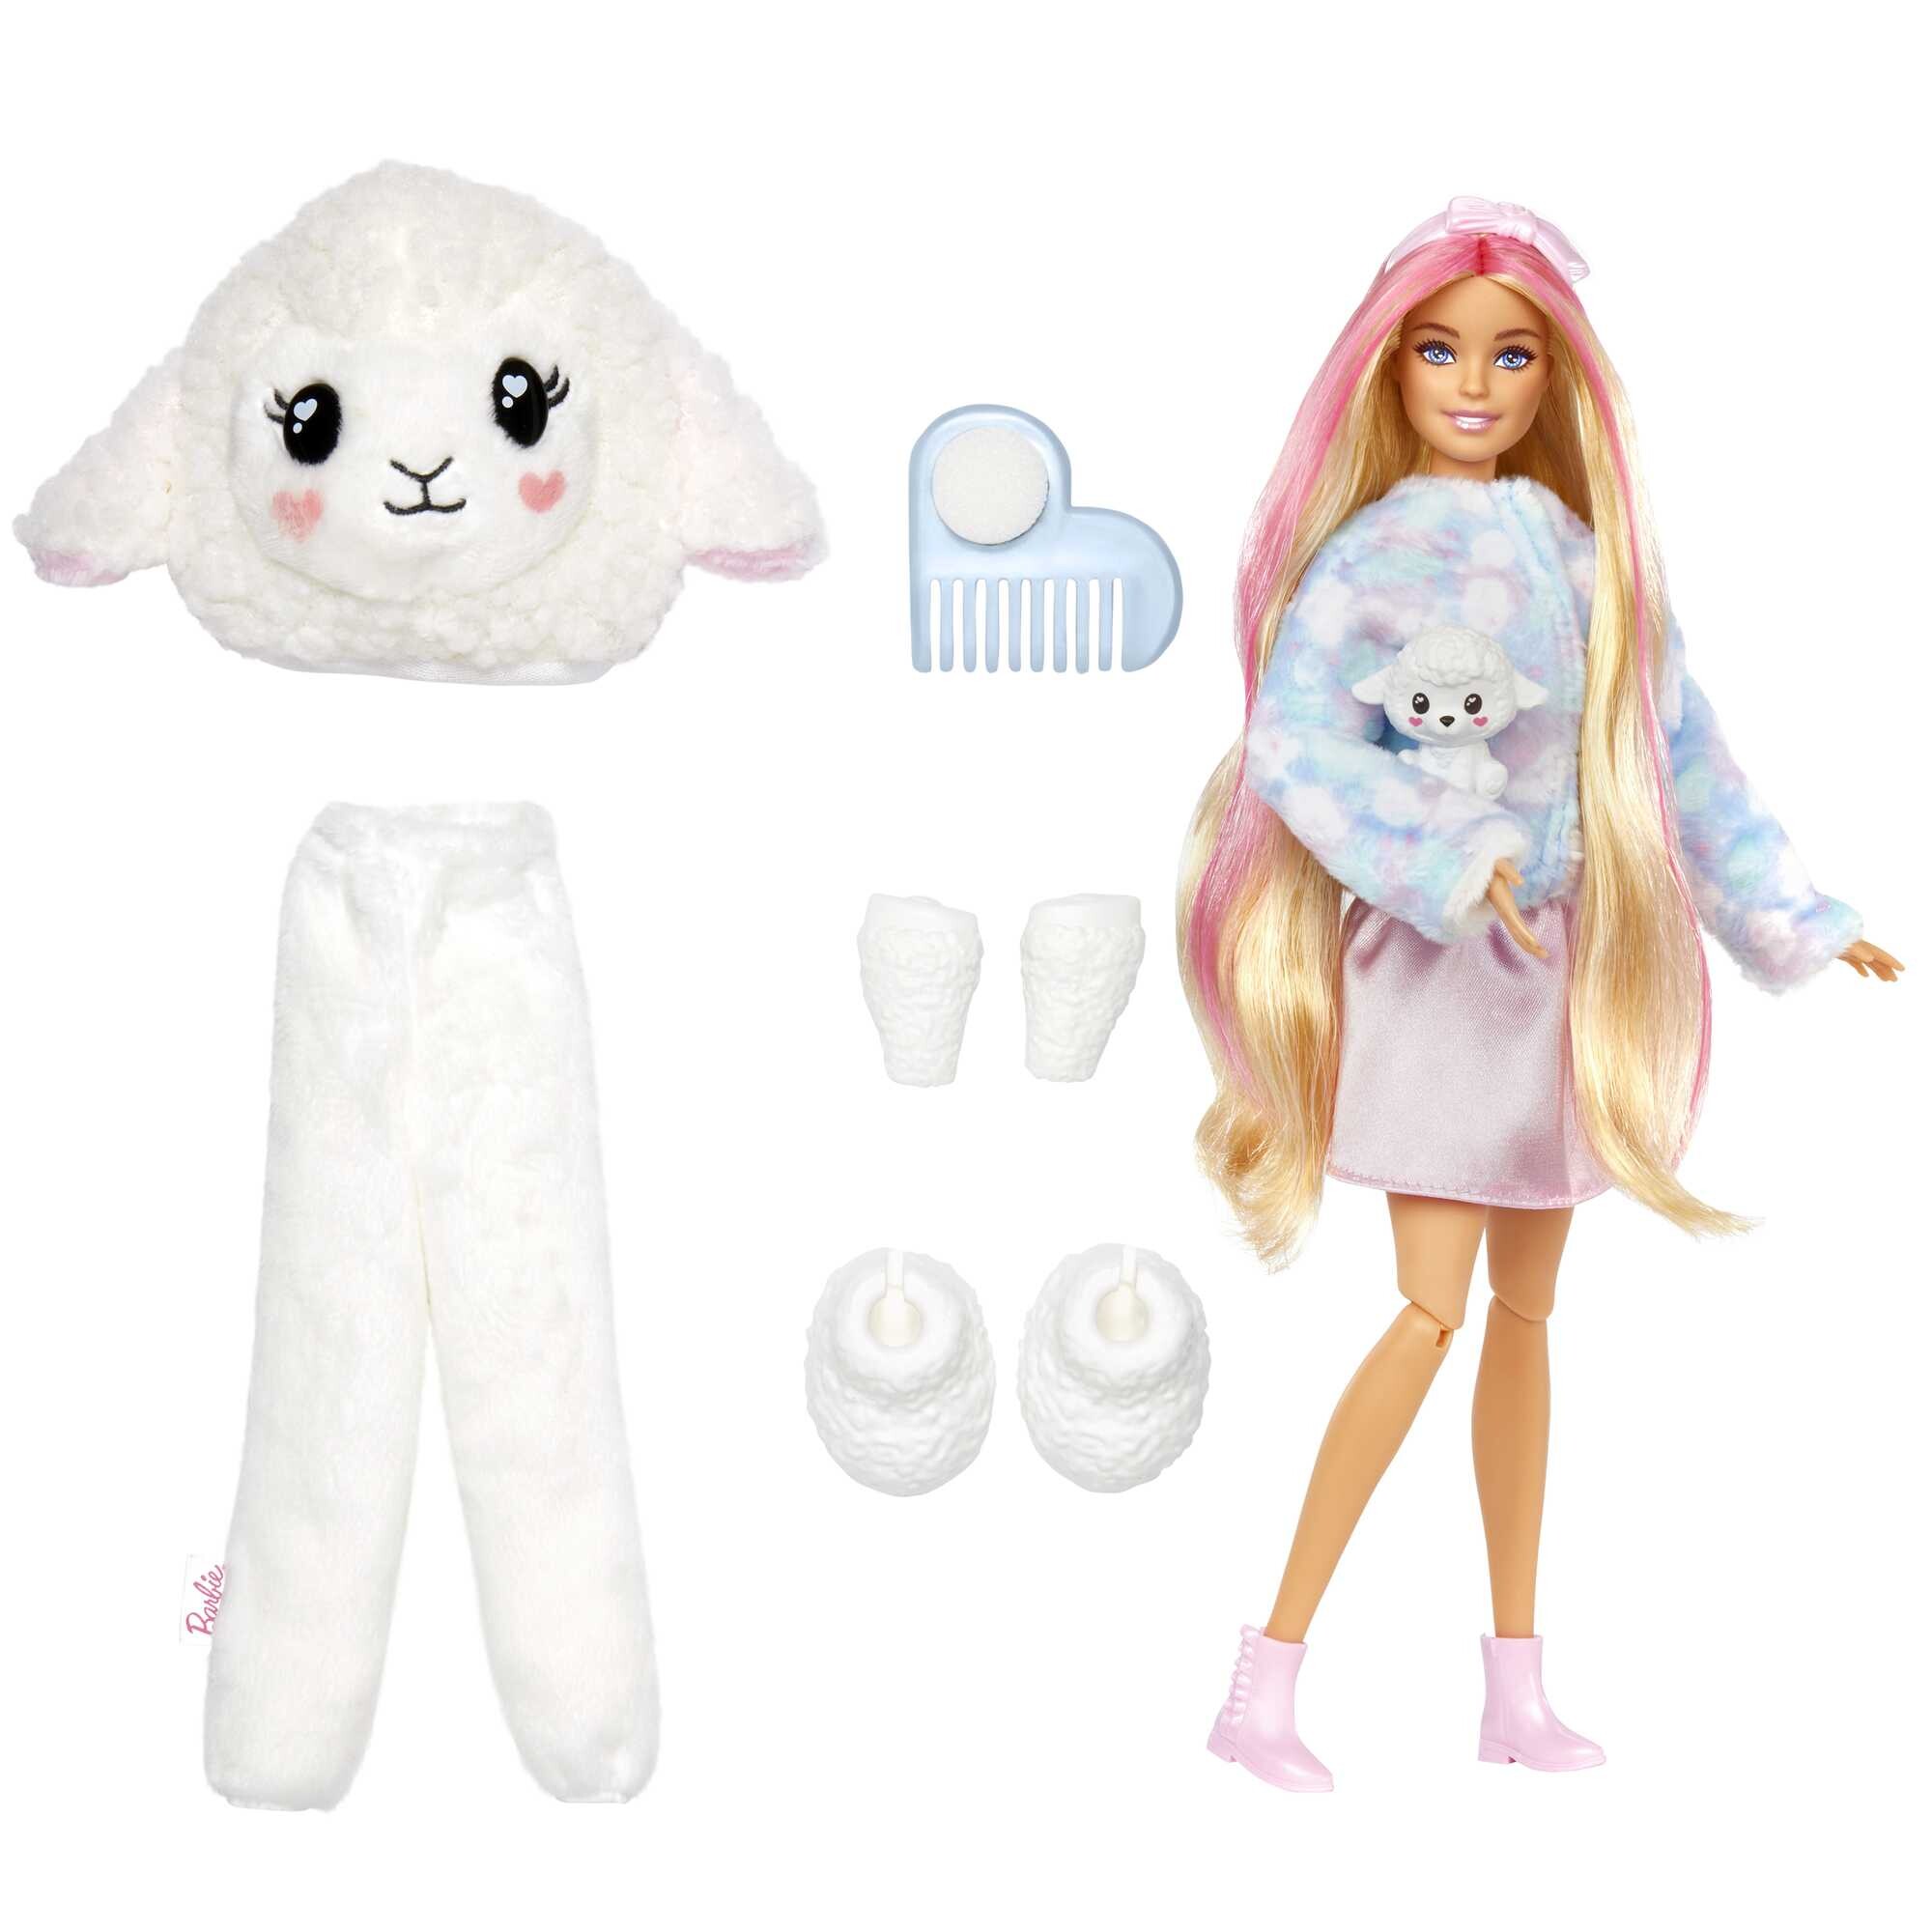 Barbie cutie reveal serie pigiamini, costume da agnellino di peluche - Barbie